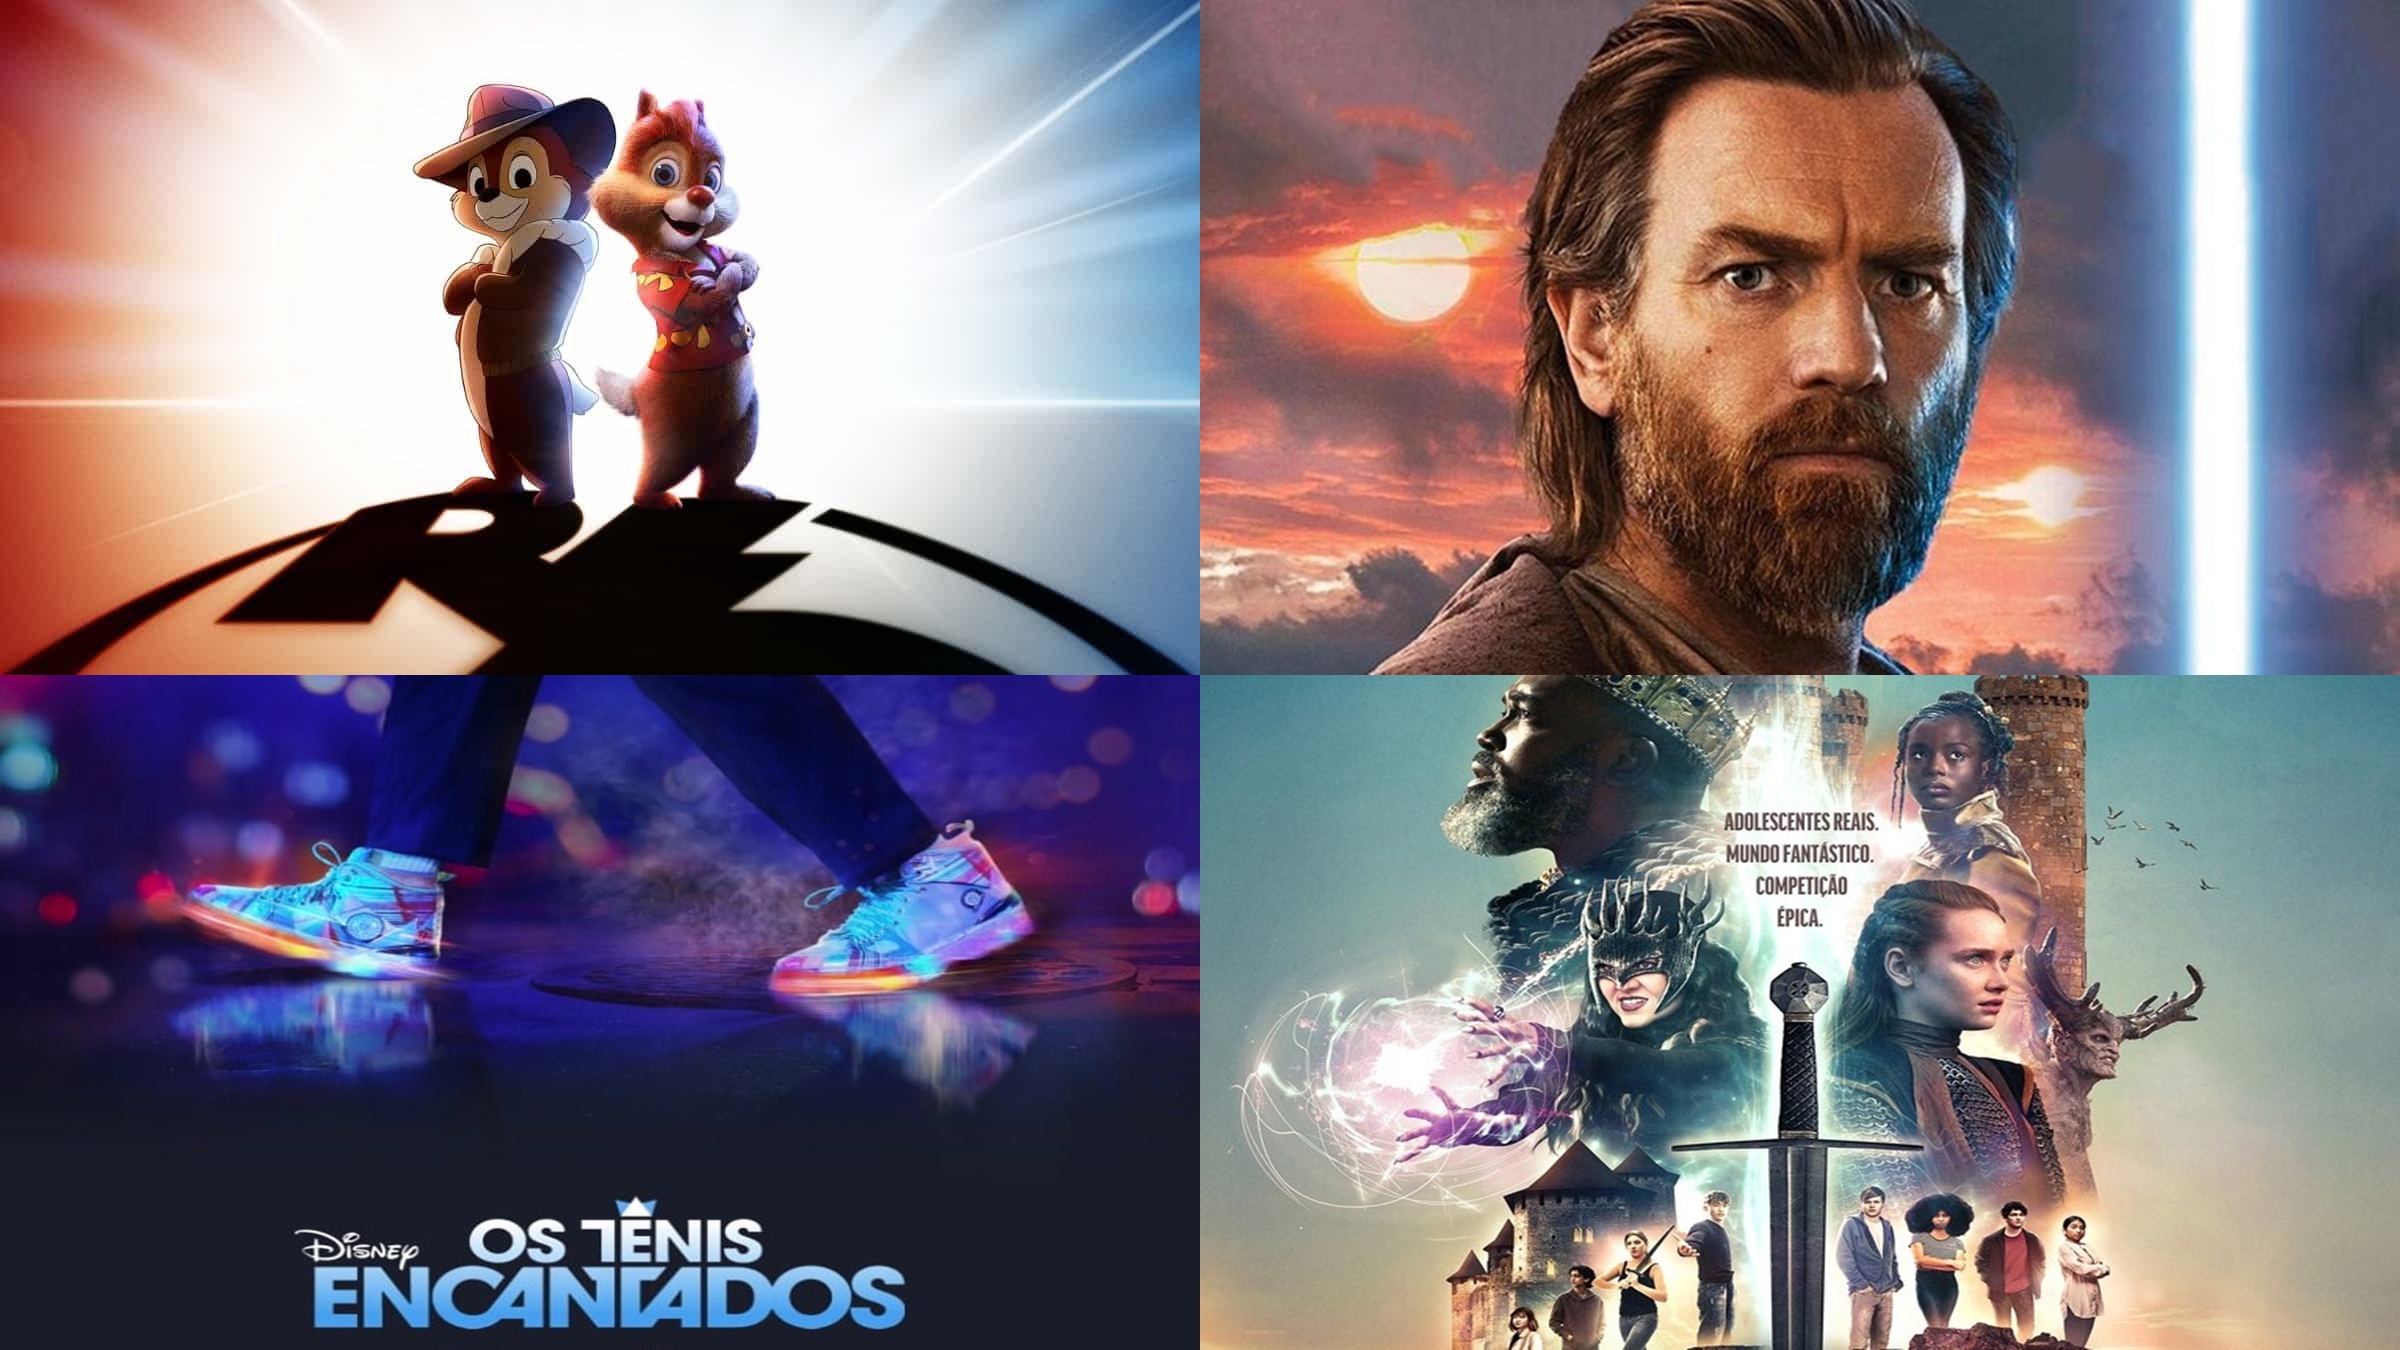 Disney+ divulga novo trailer e data de estreia de 'Tico e Teco: Defensores  da Lei